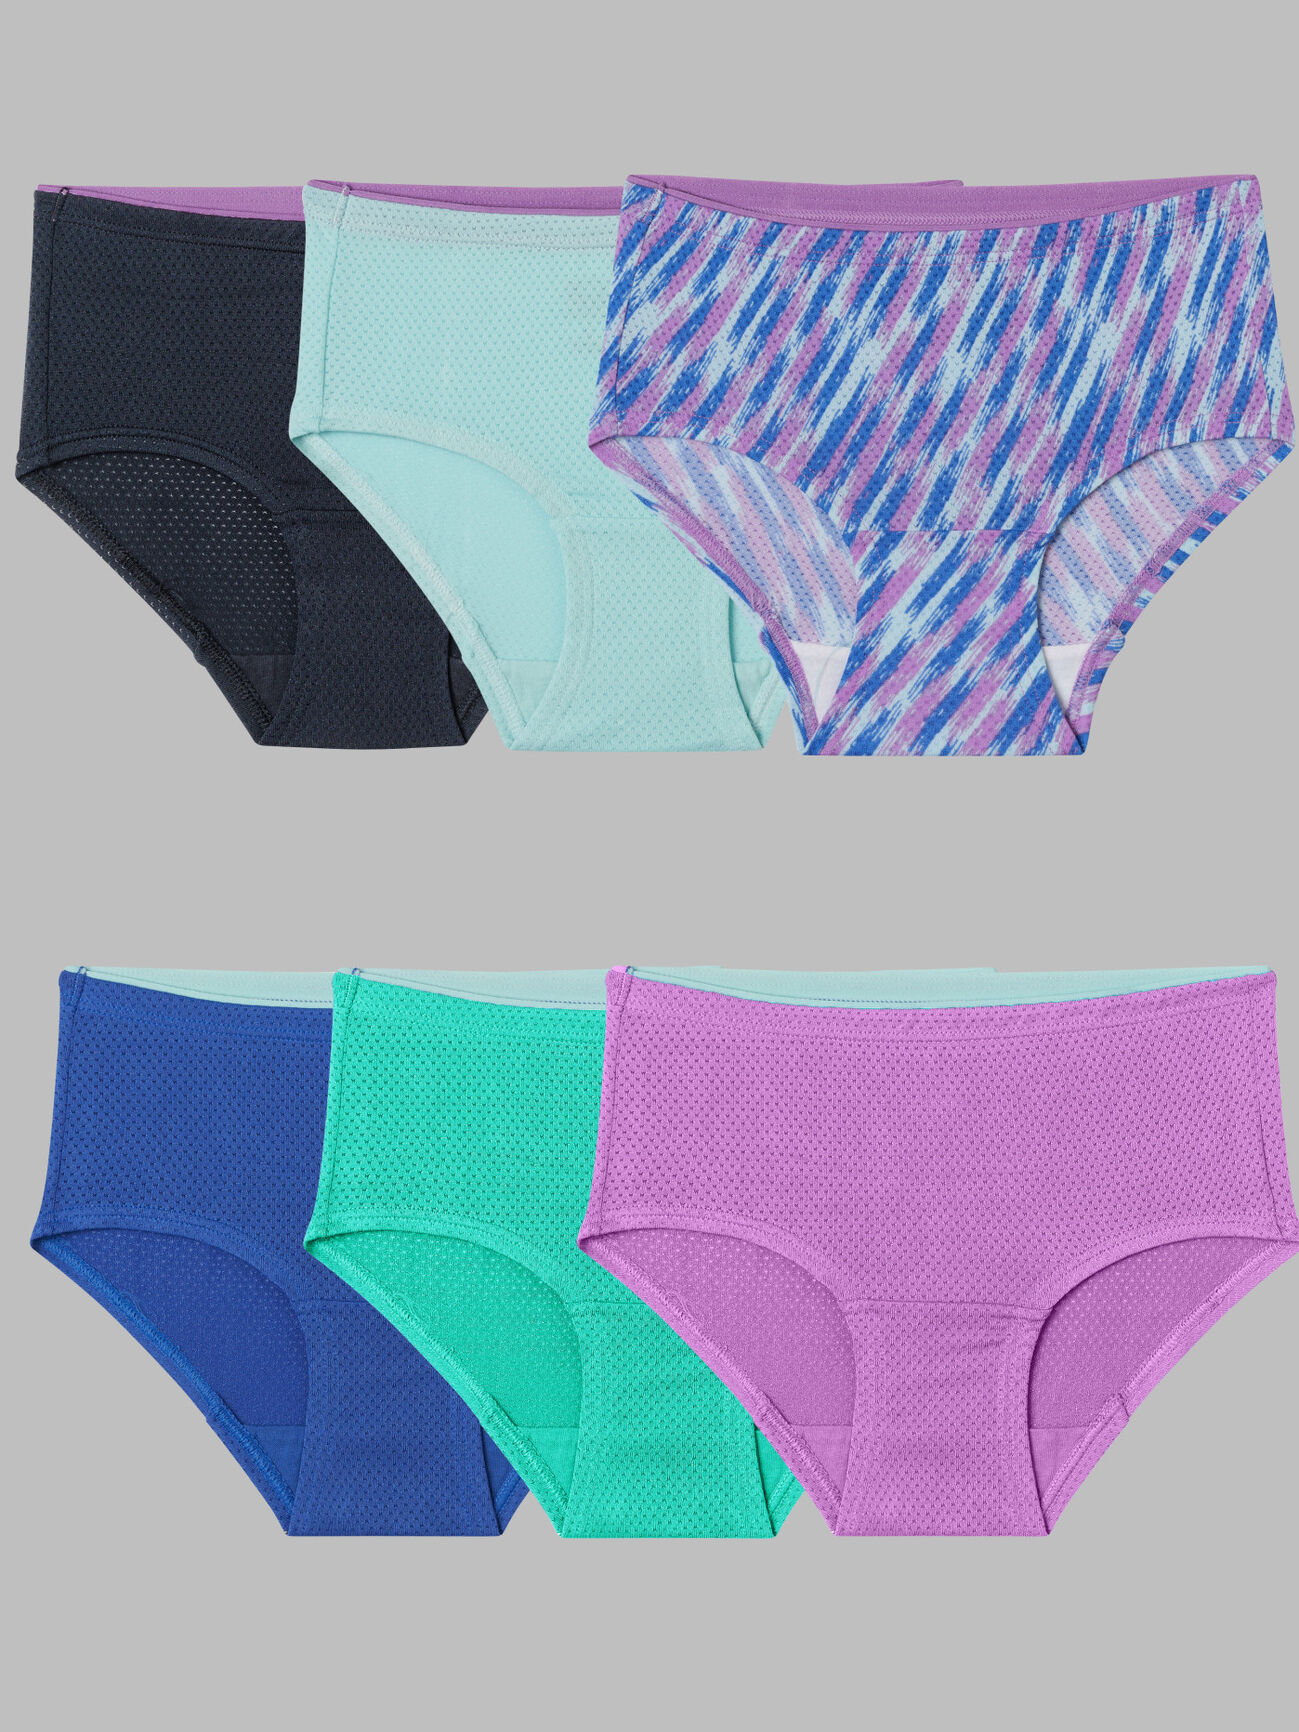 Organic Micro Modal Women's Underwear Breathable Full Briefs Soft Panties  Comfort Underpants Ladies Panties 3 Pack